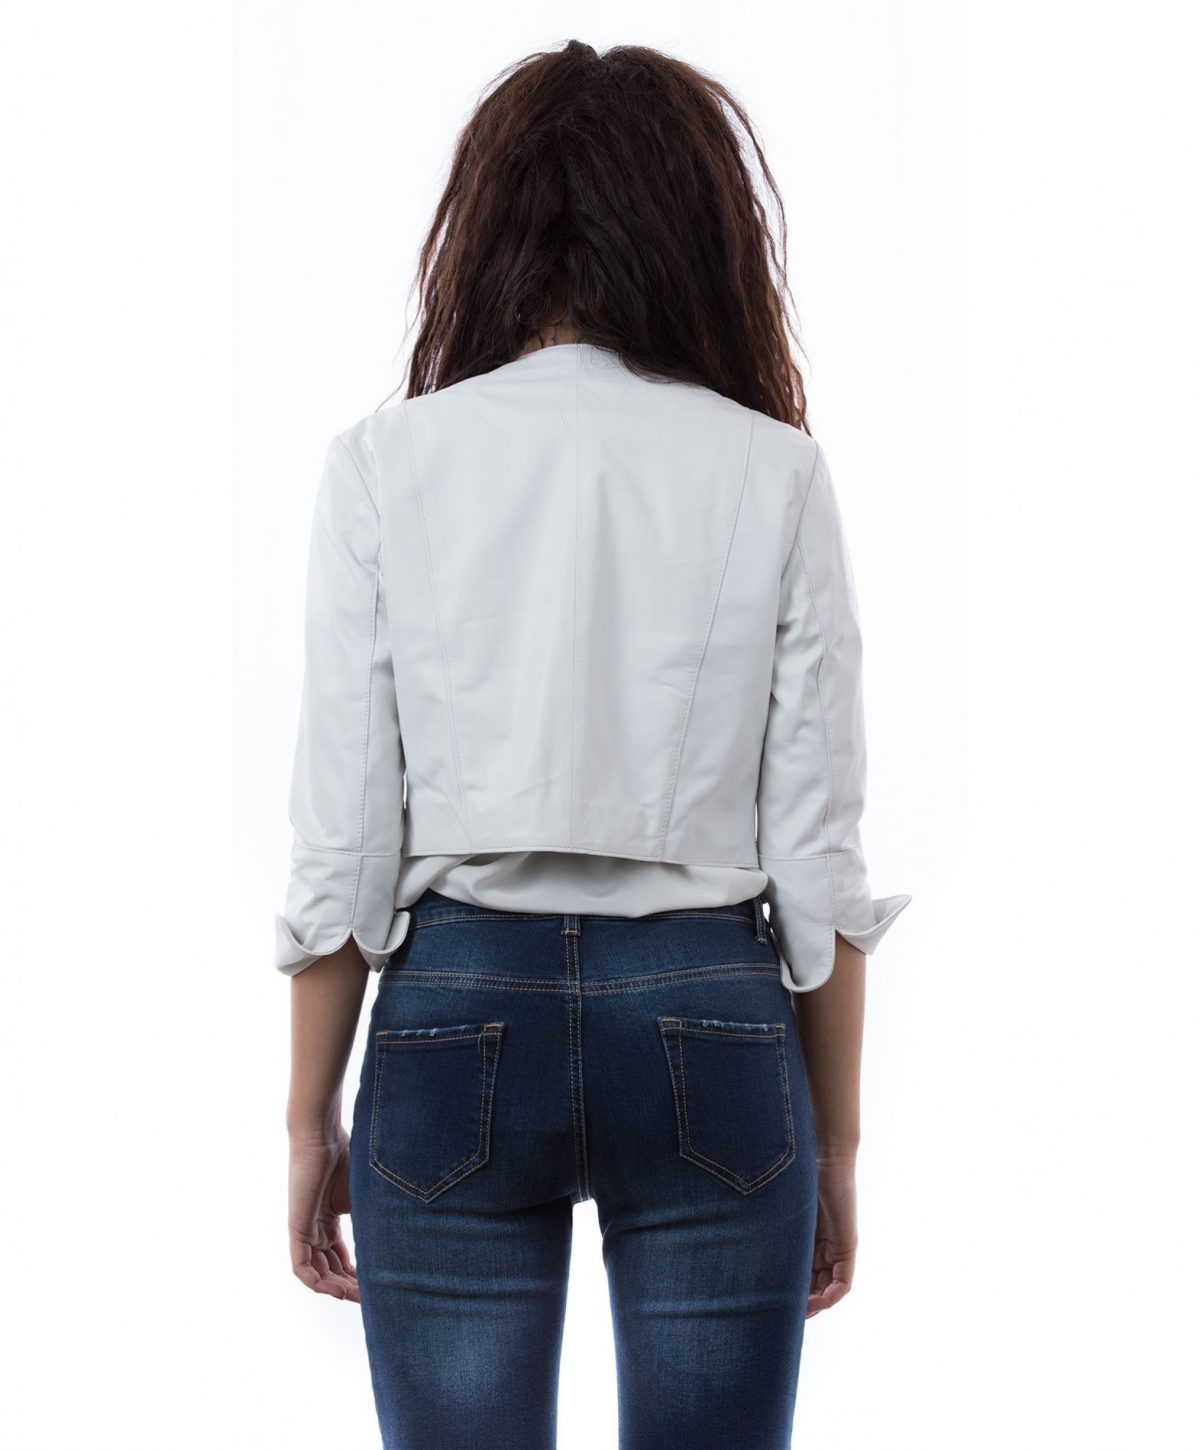 short-leather-jacket-white-bolerino (1)